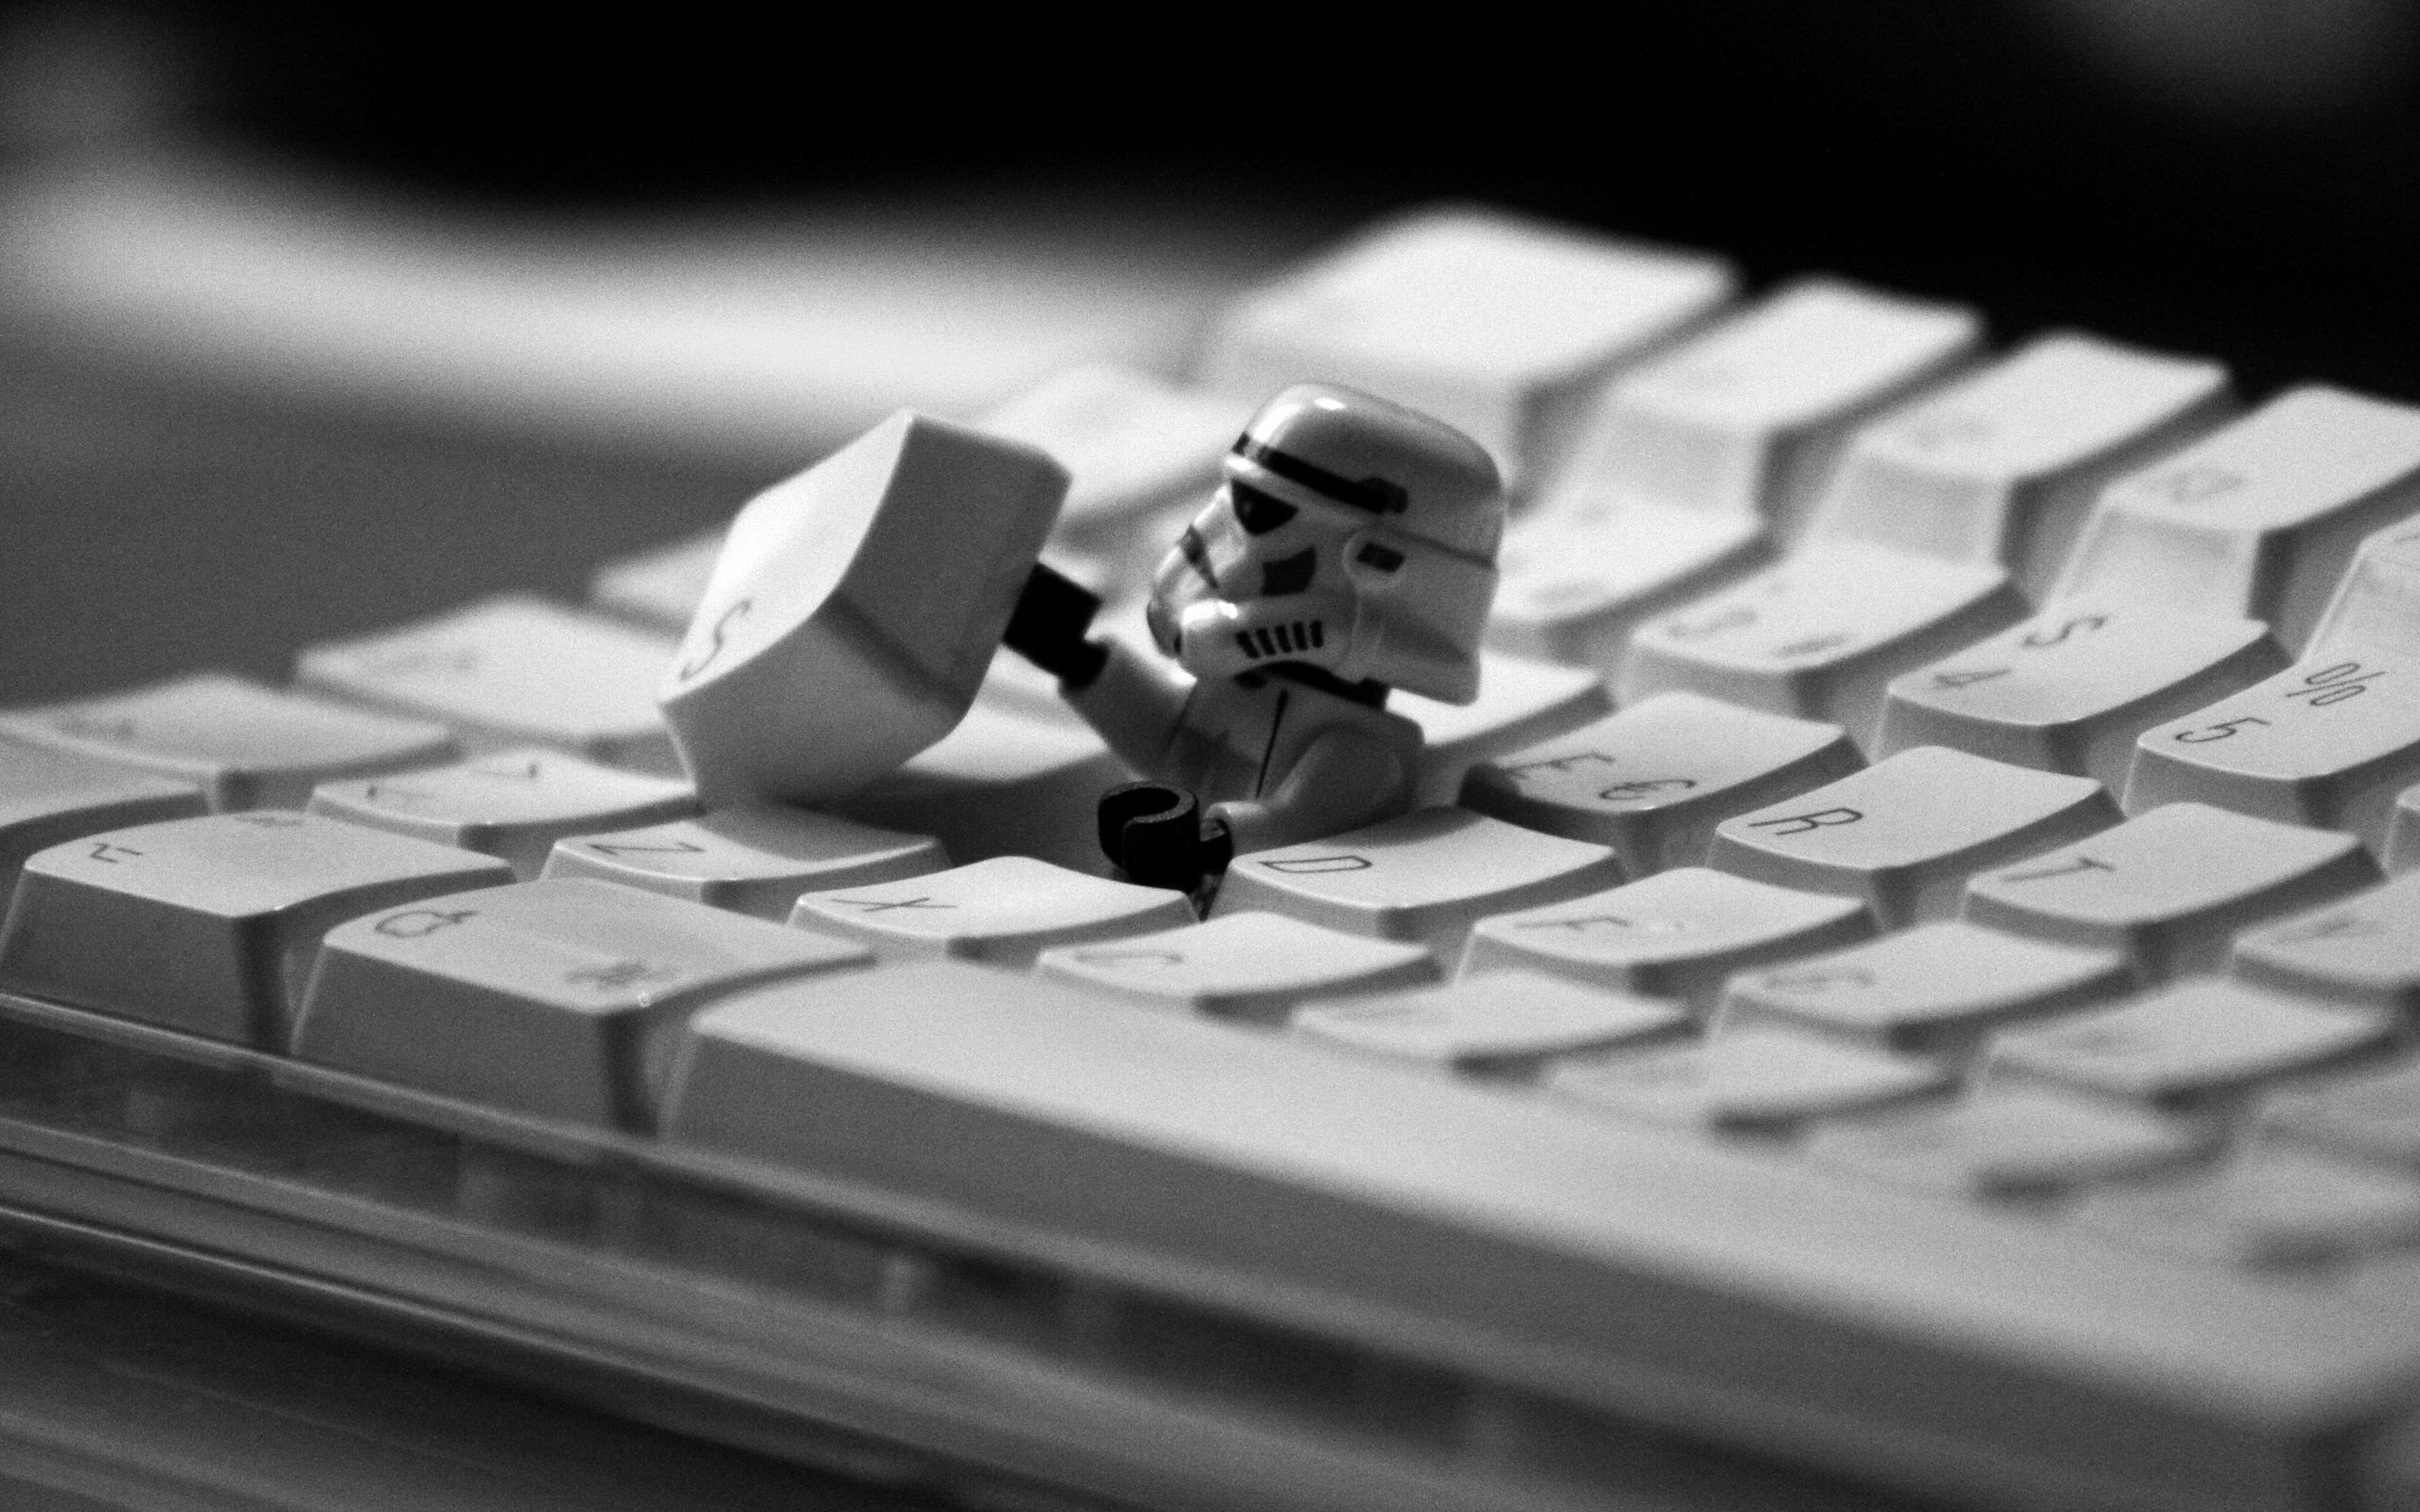 Lego out of keyboard. Star wars wallpaper, Lego star wars, Lego